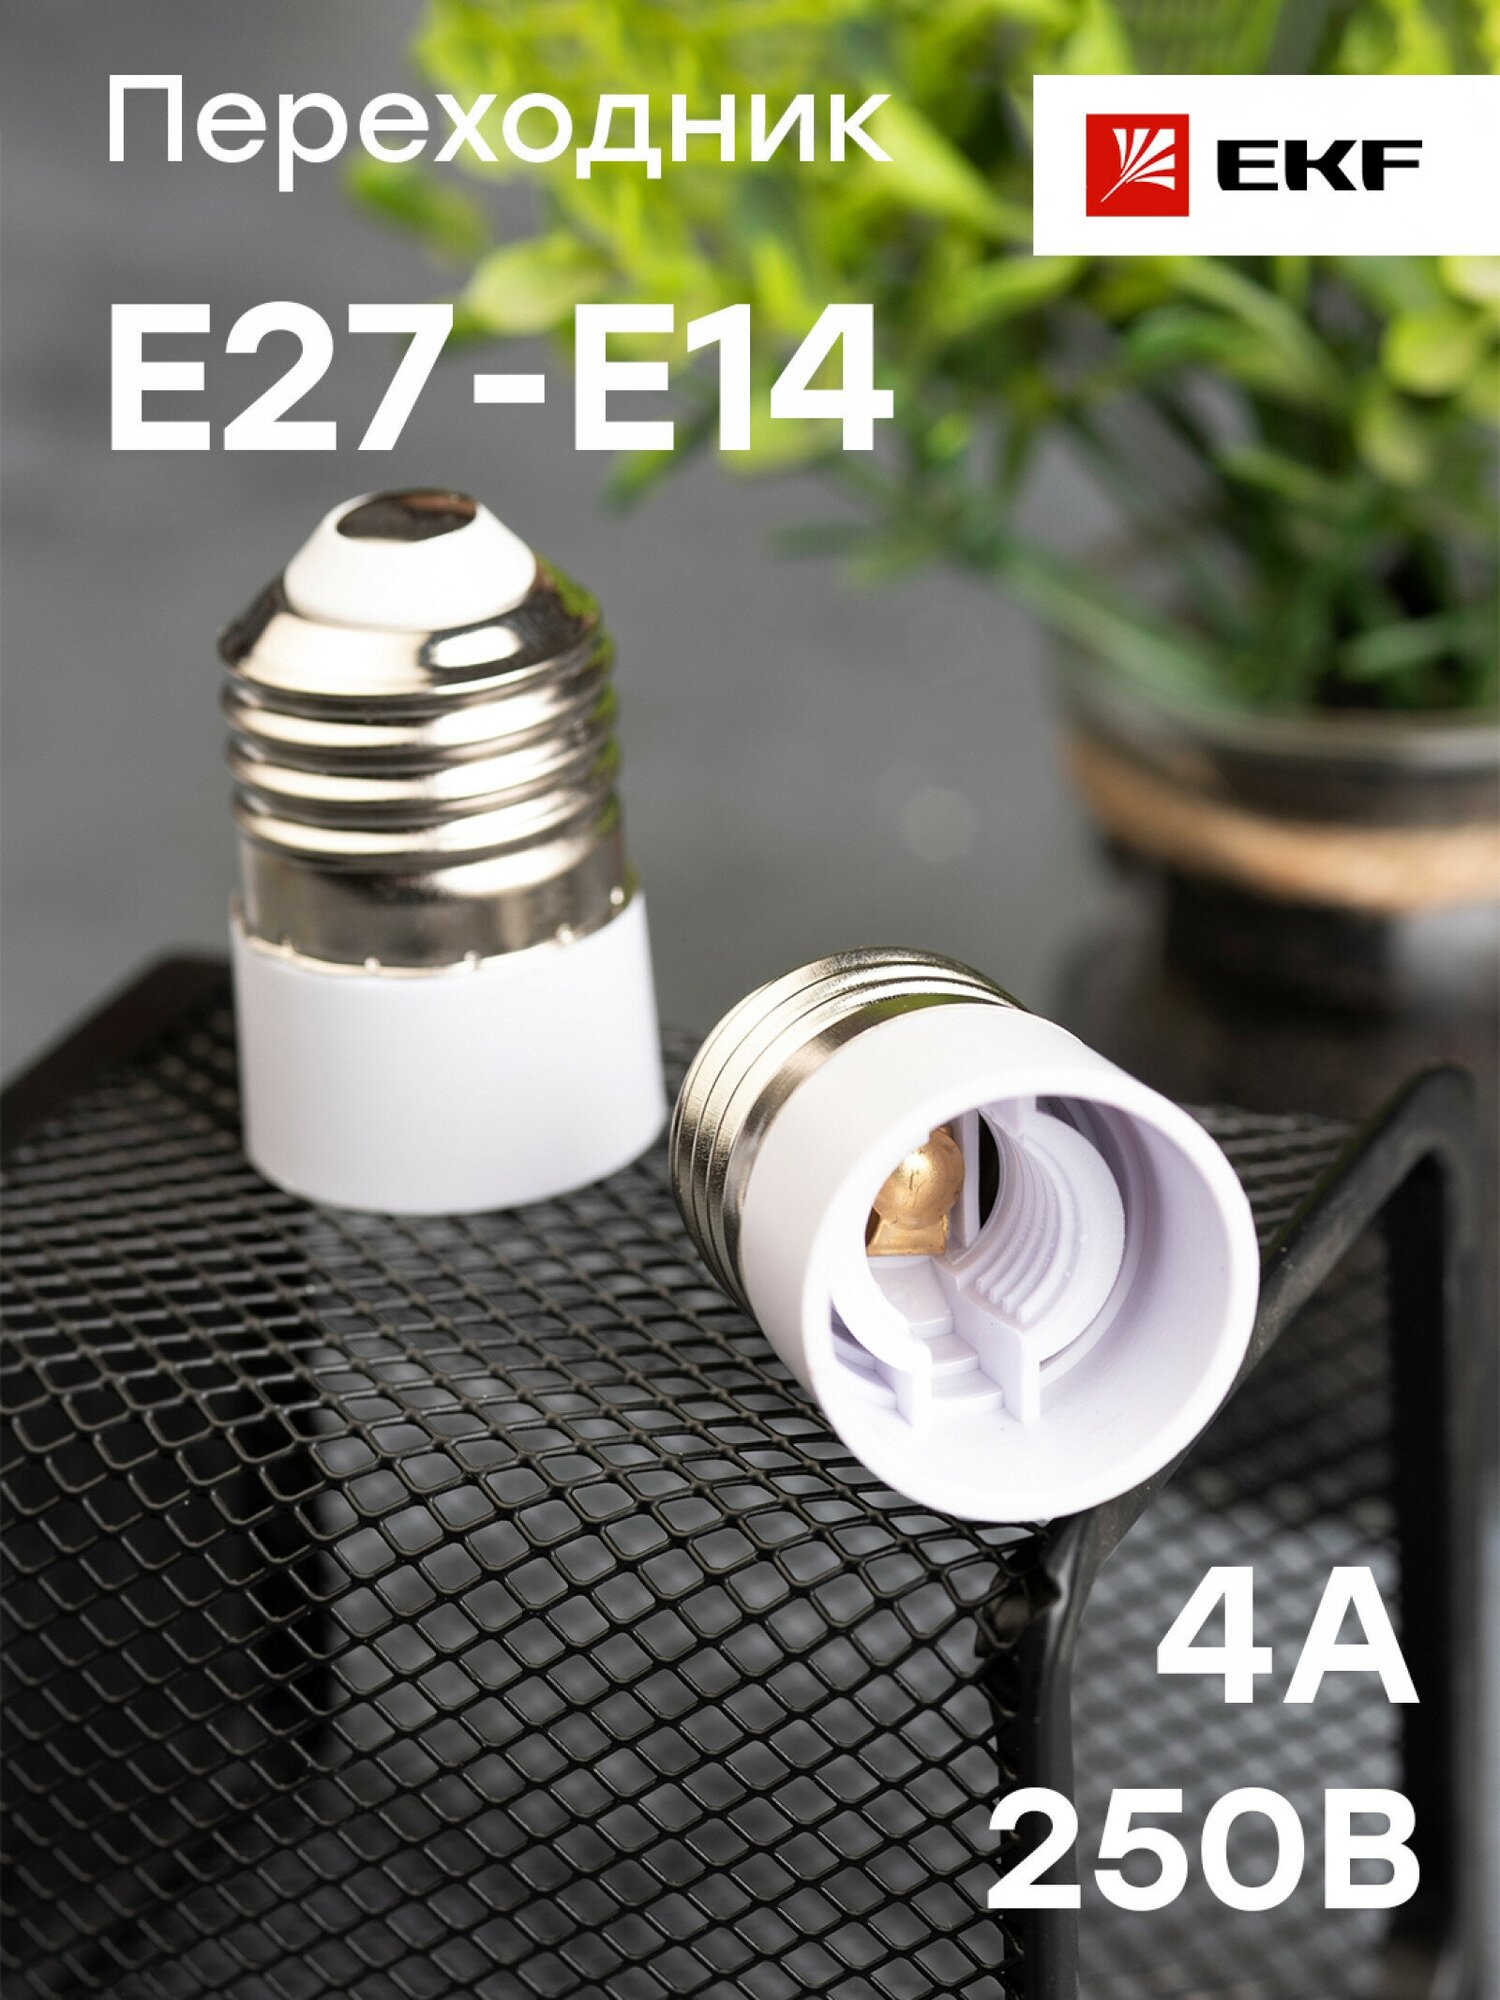 Переходник E27-E14 бел. EKF